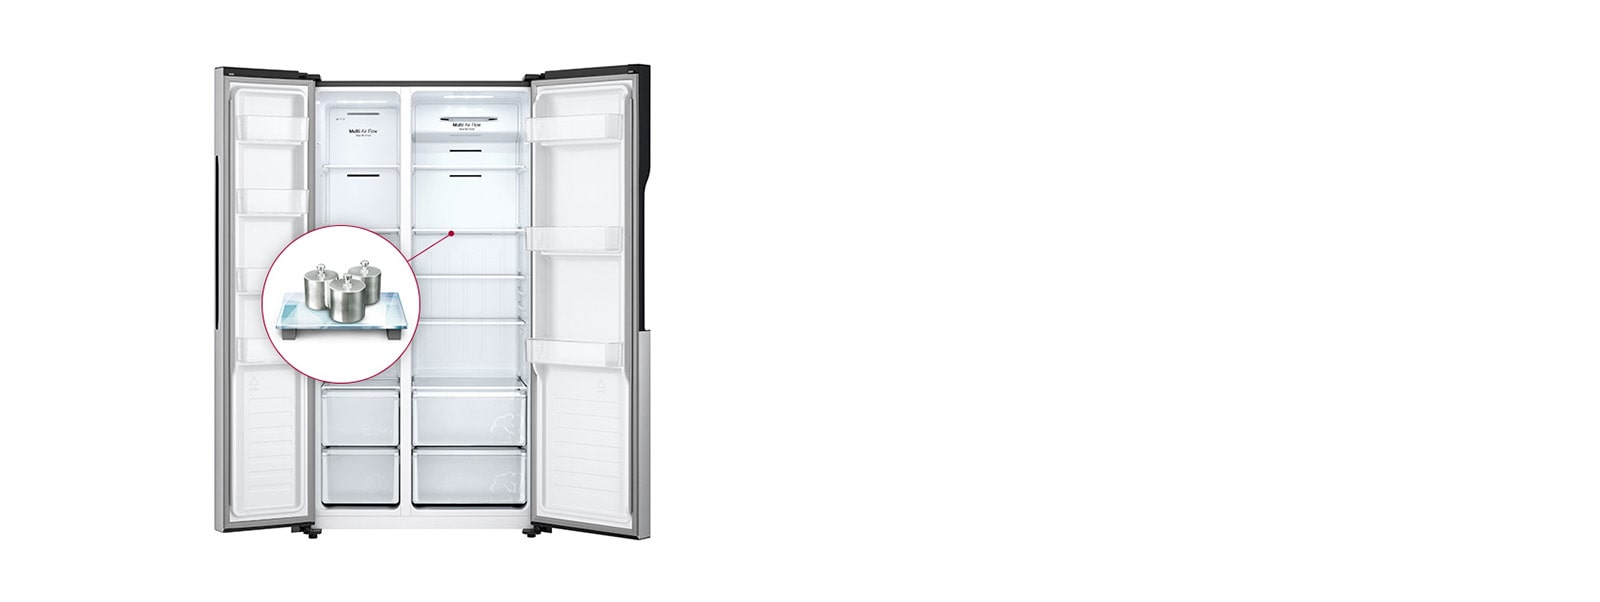 Una imagen que muestra todo el interior del refrigerador.